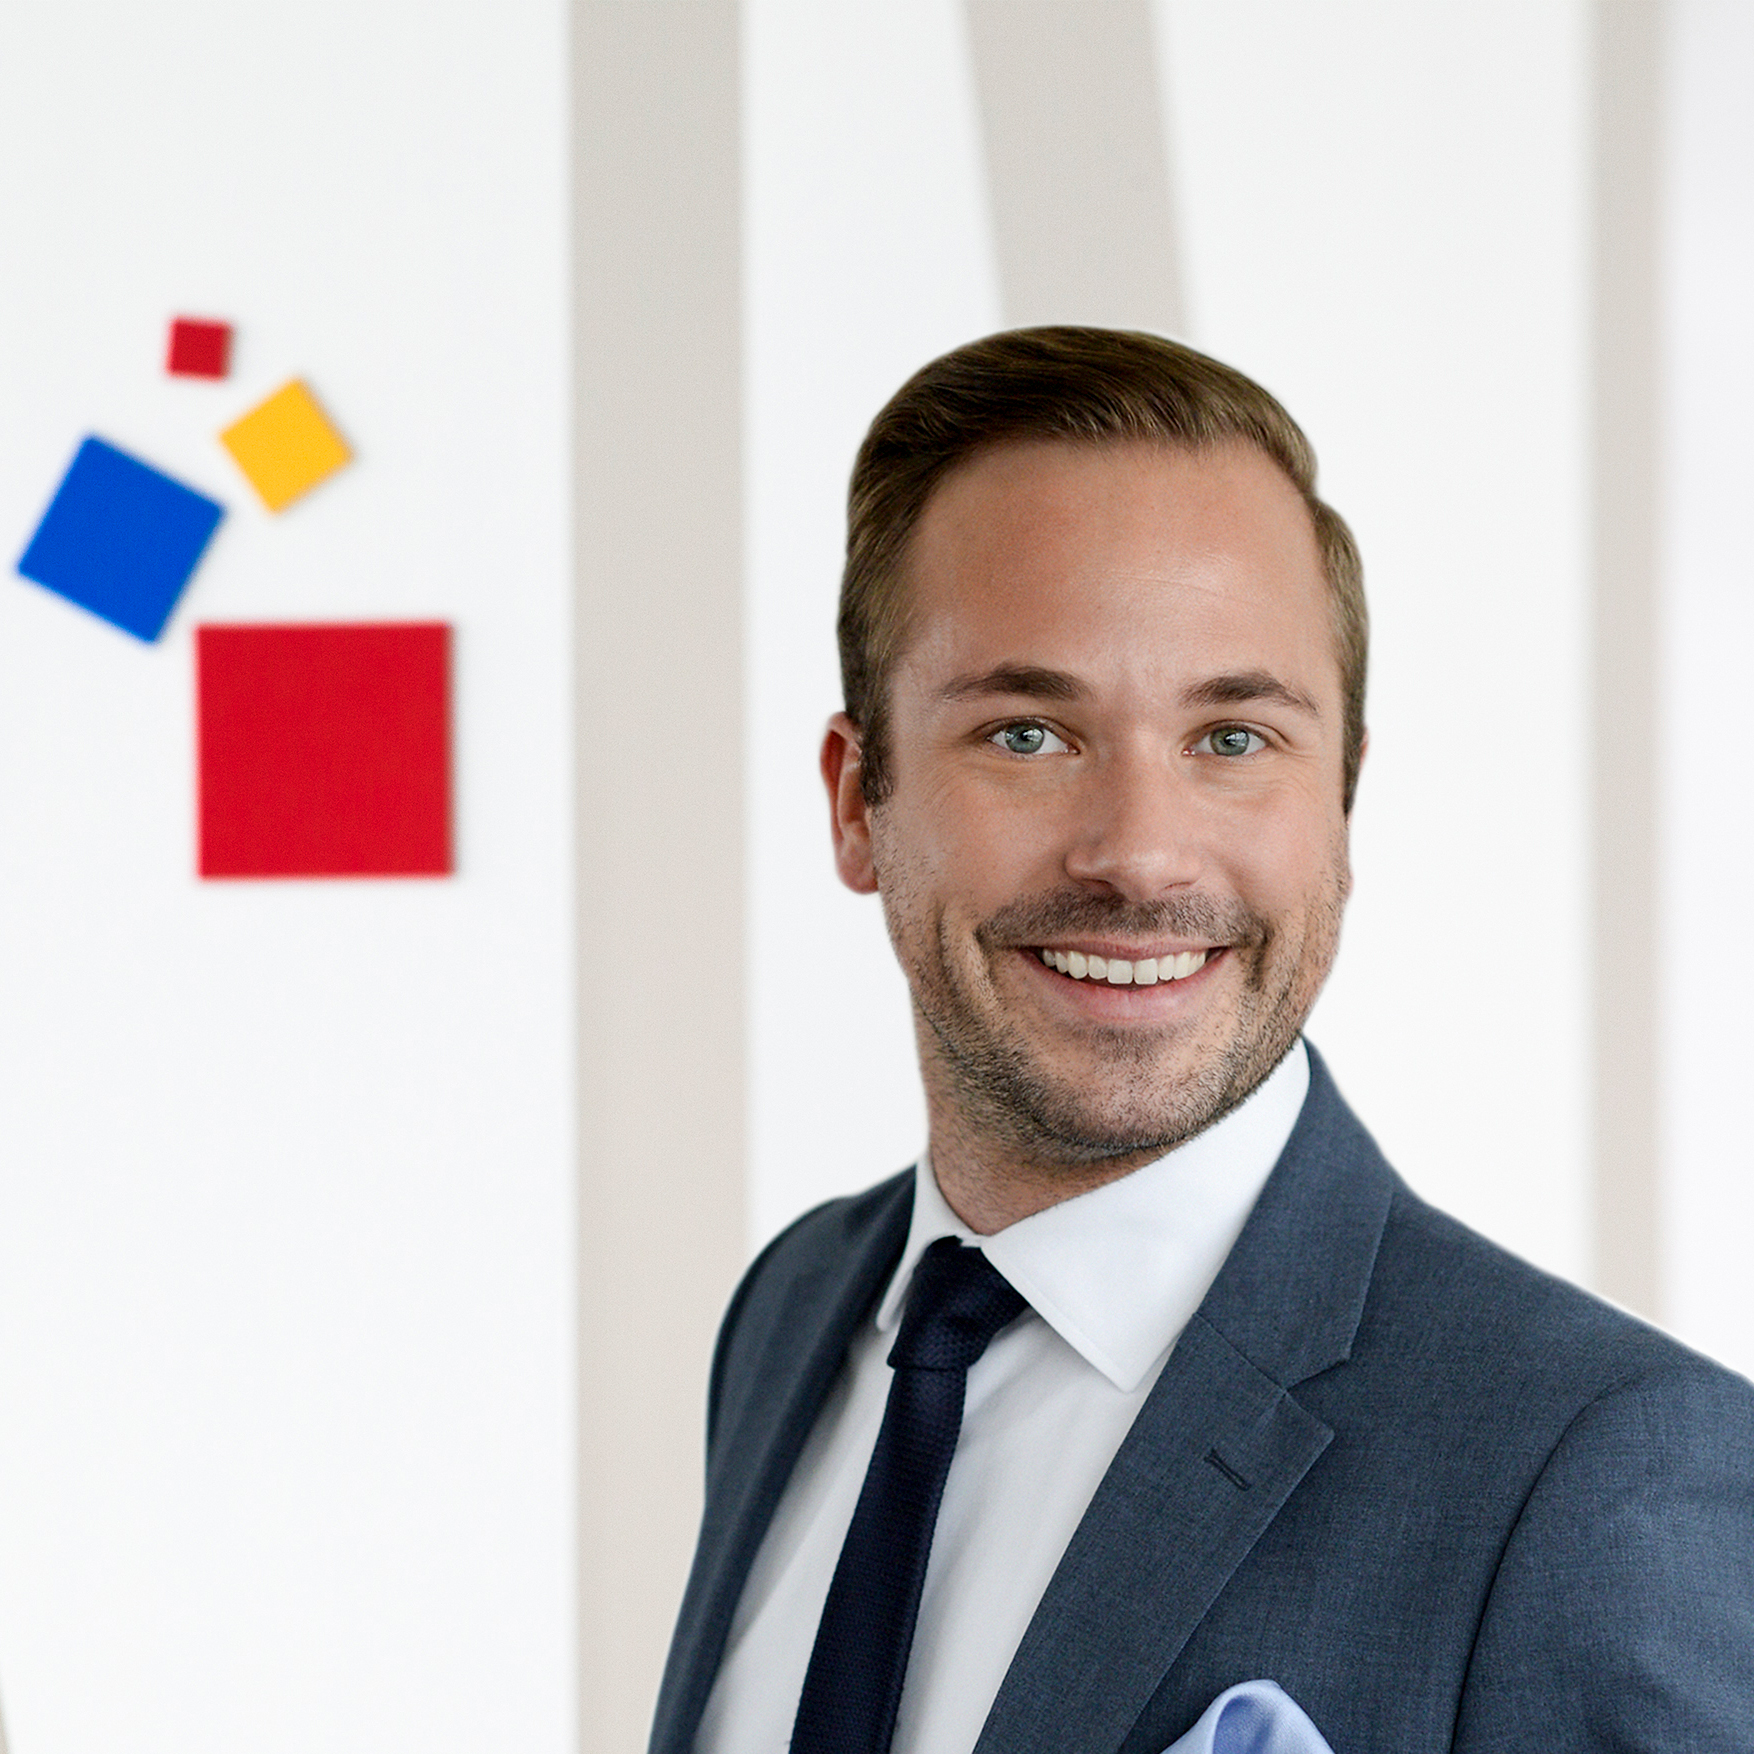 Phillipp Ferger, Bereichsleiter Tendence und Nordstil sowie zweiter Geschäftsführer von nmedia